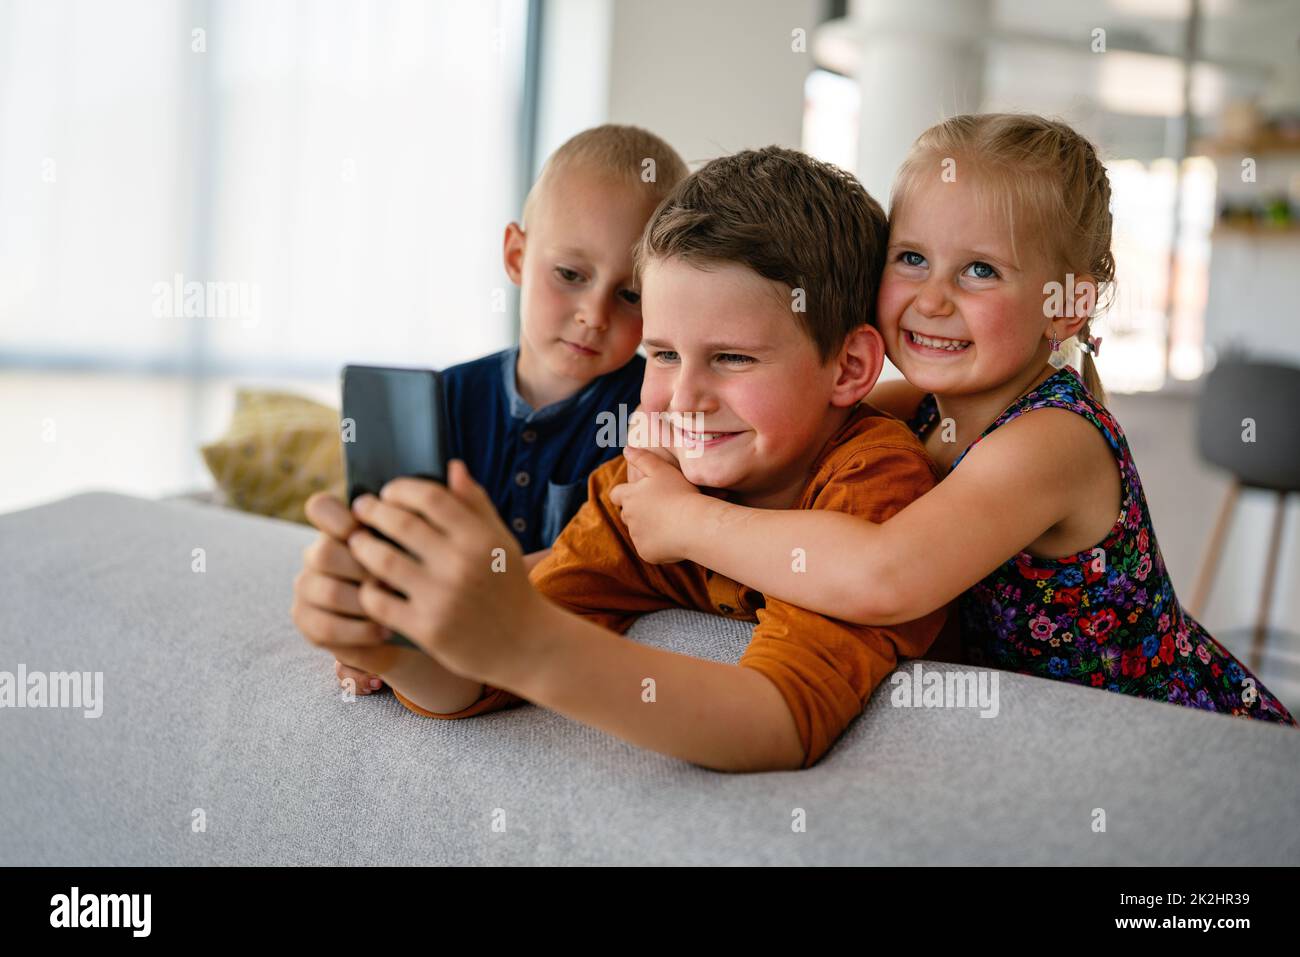 Kindheitstechnologie Kinder Smartphone Konzept. Glückliche kleine Kinder spielen auf dem Handy Stockfoto